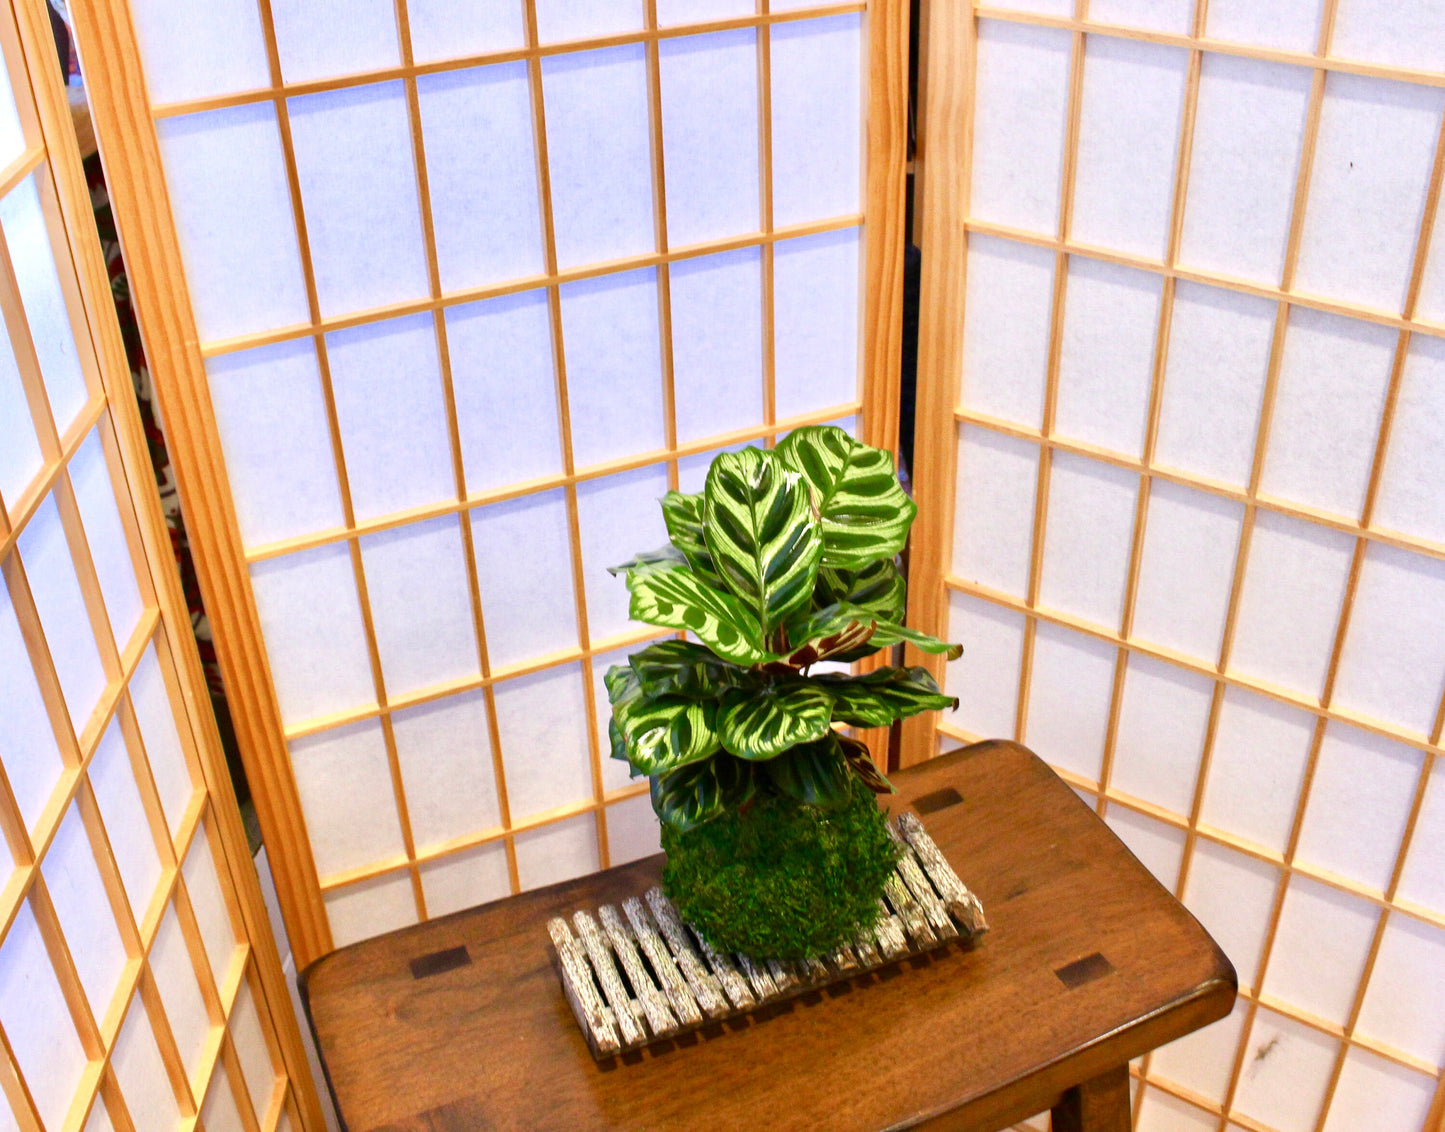 Calathea makoyana Kokedama - Bonsai Moss ball - Japanese house plant decoration